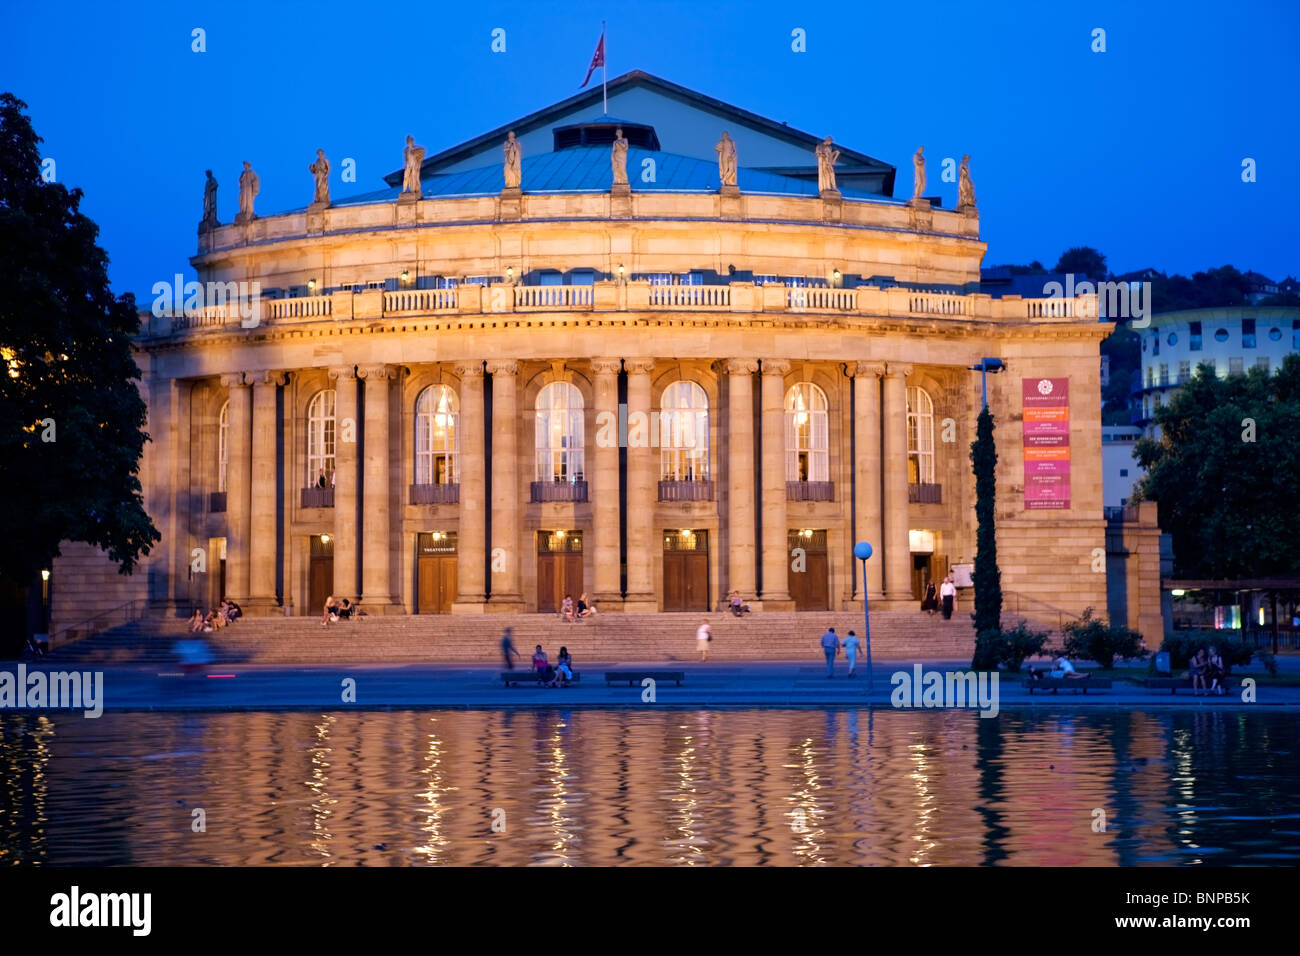 Nachtaufnahme von der beleuchteten Opernhaus in Stuttgart, Deutschland, See Theatersee im Vordergrund, Passanten, Begleiter Stockfoto